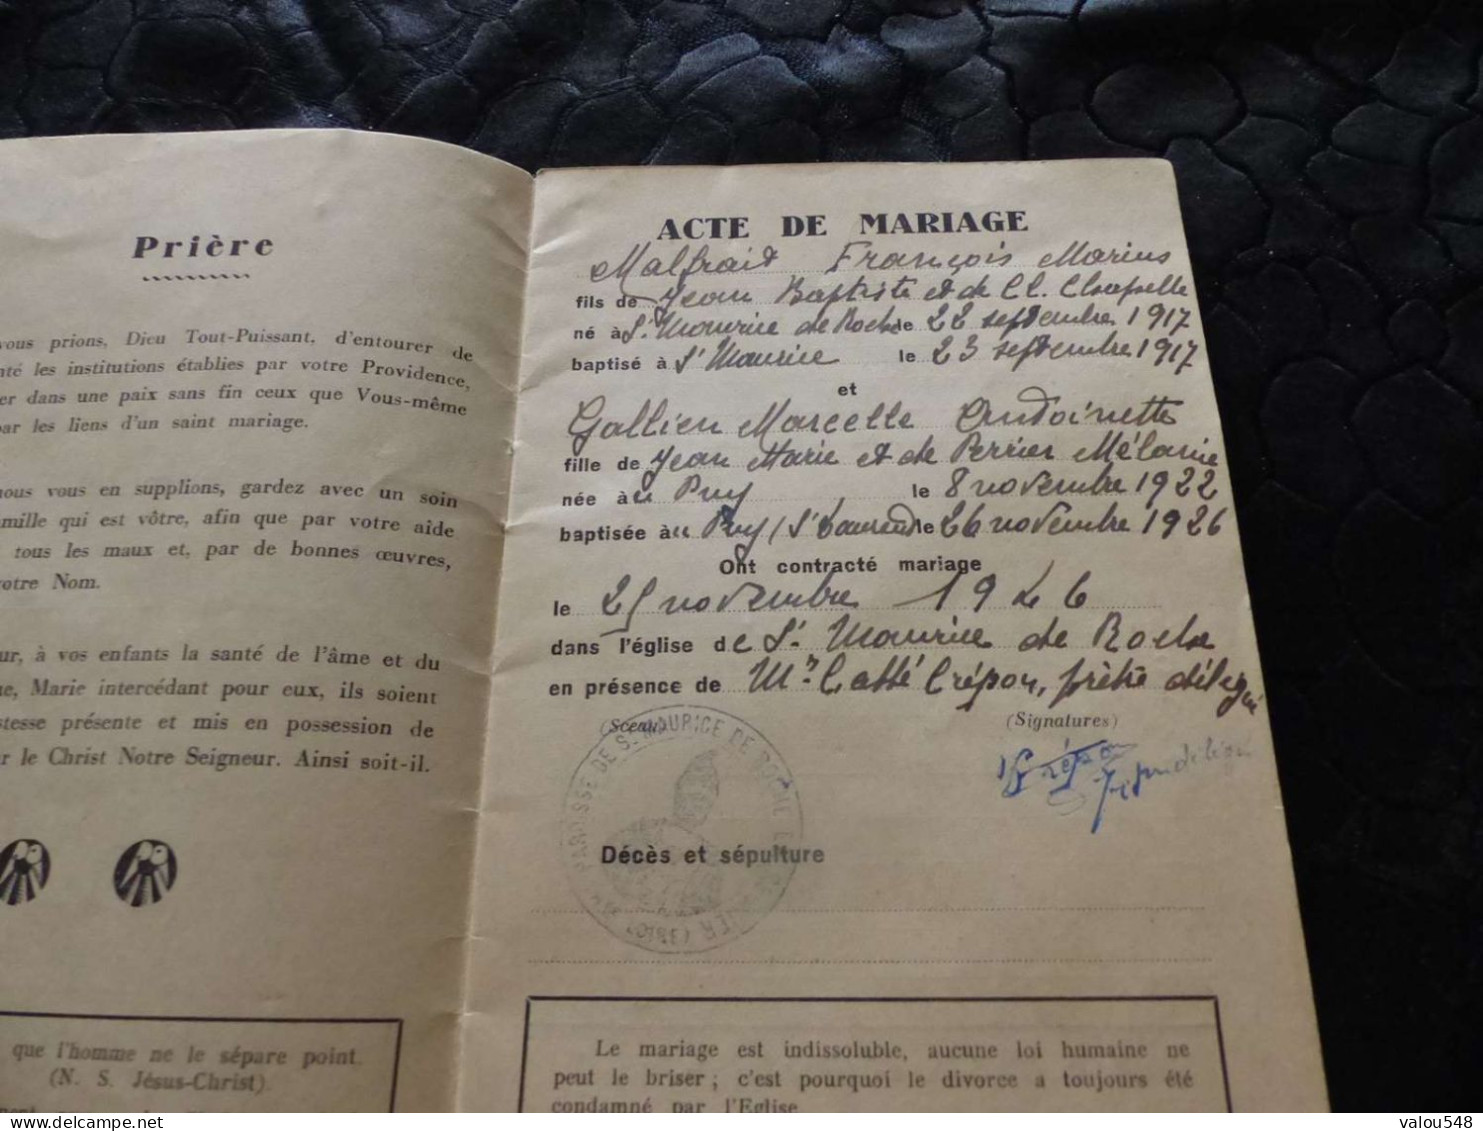 VP-95 , Livret De Famille Catholique , Diocèse Du Puy-en-Velay, 1946 - Documents Historiques